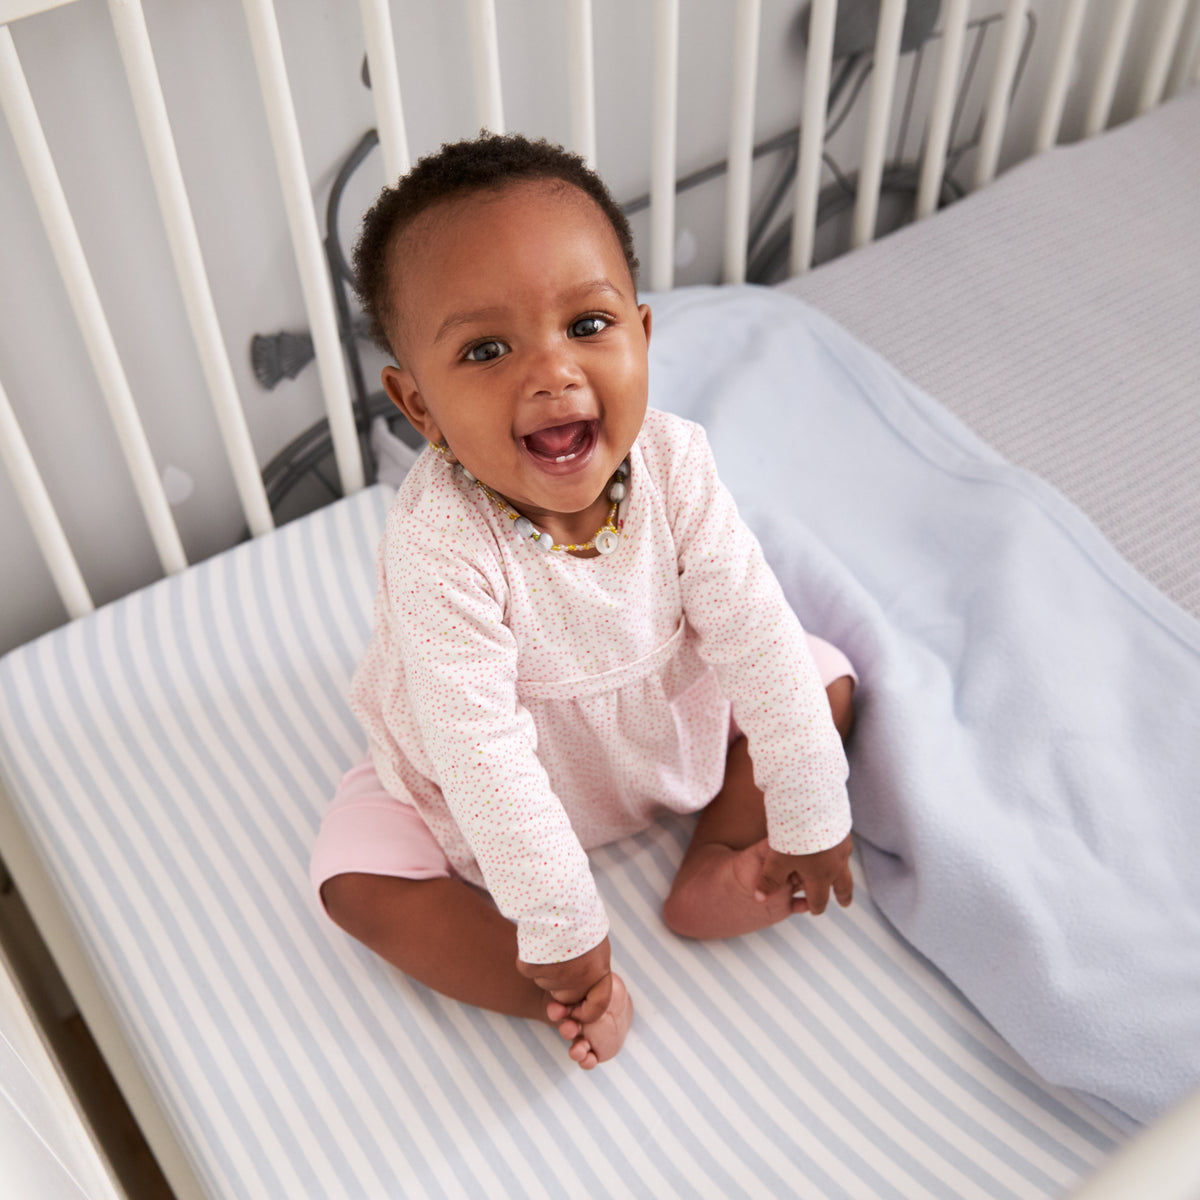 Cuna para el bebé: qué tener en cuenta a la hora de elegirla